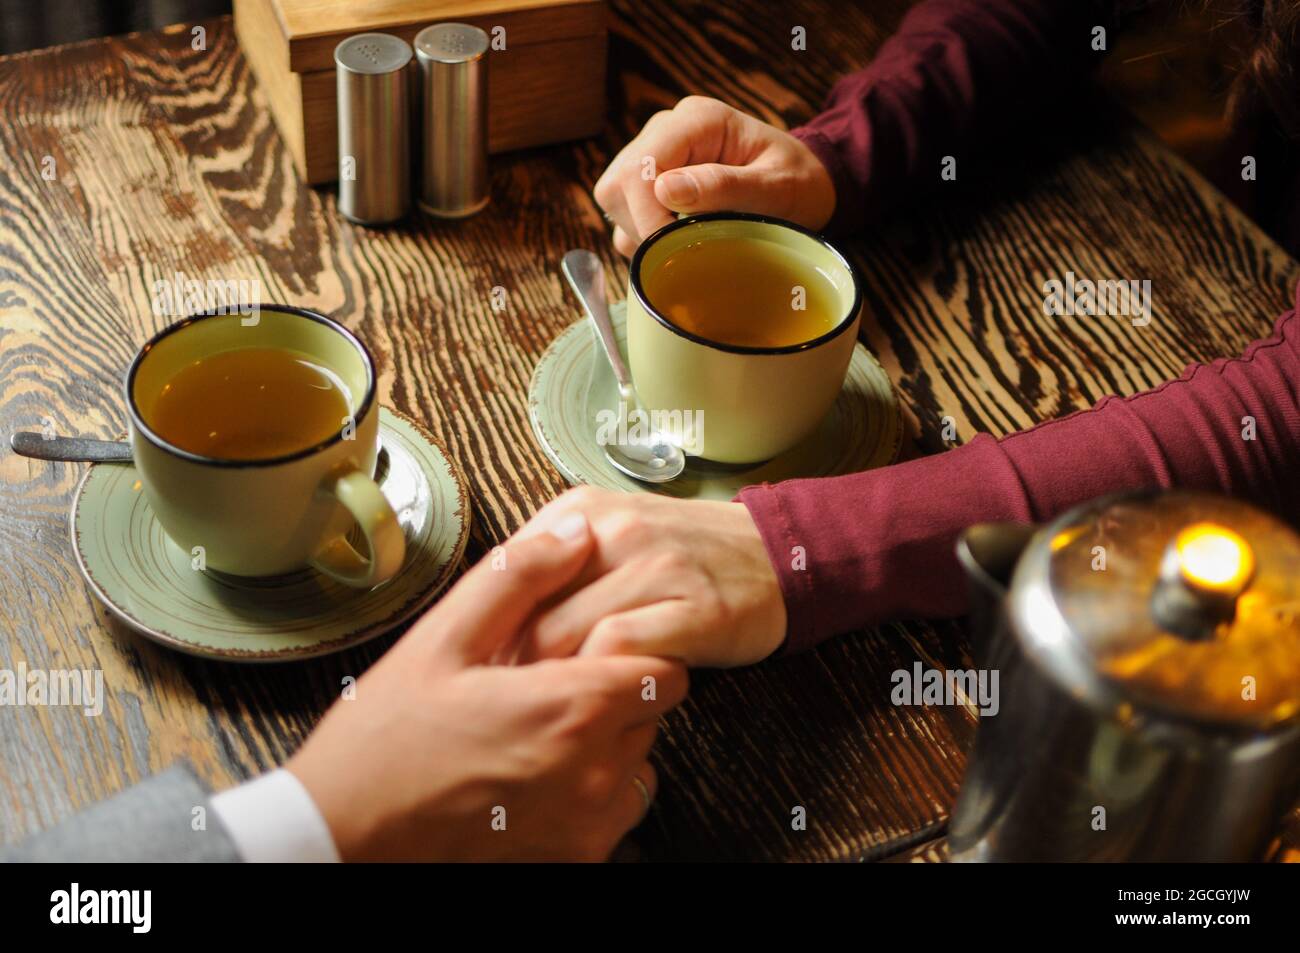 Nahaufnahme eines jungen Paares, das in einem Café die Hände hält und Tee trinkt. Romantische Zeit Stockfoto